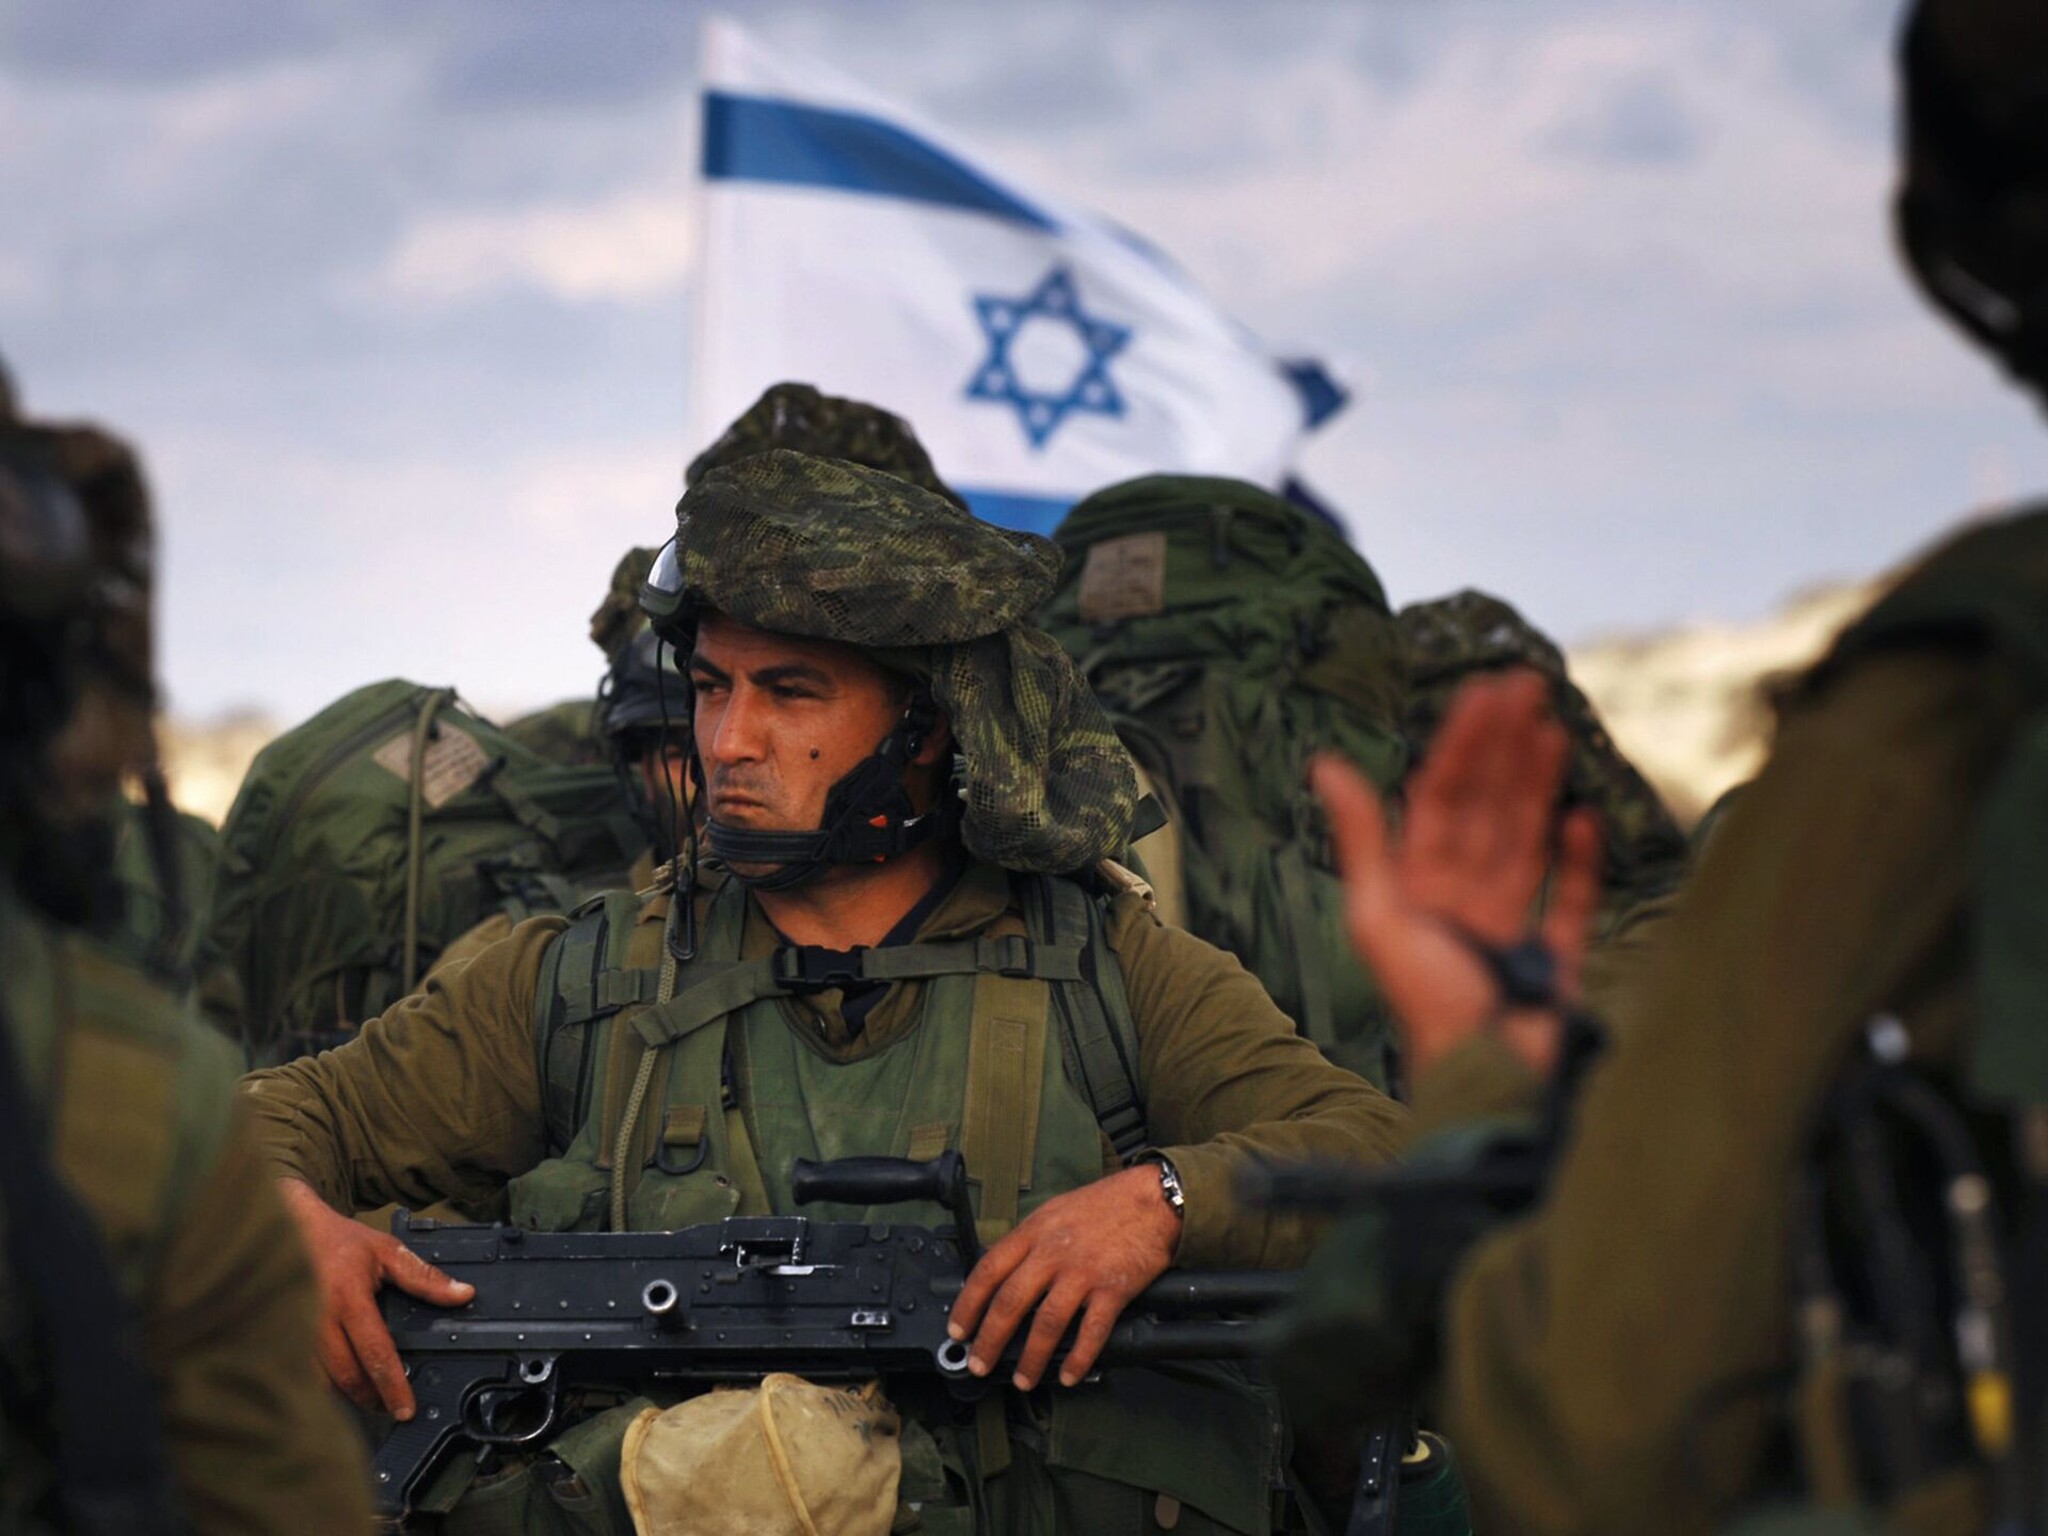 القوات الإسرائيلية تقتحم عدة مدن بالضفة الغربية كأن الهدنة لم تصل إليهم